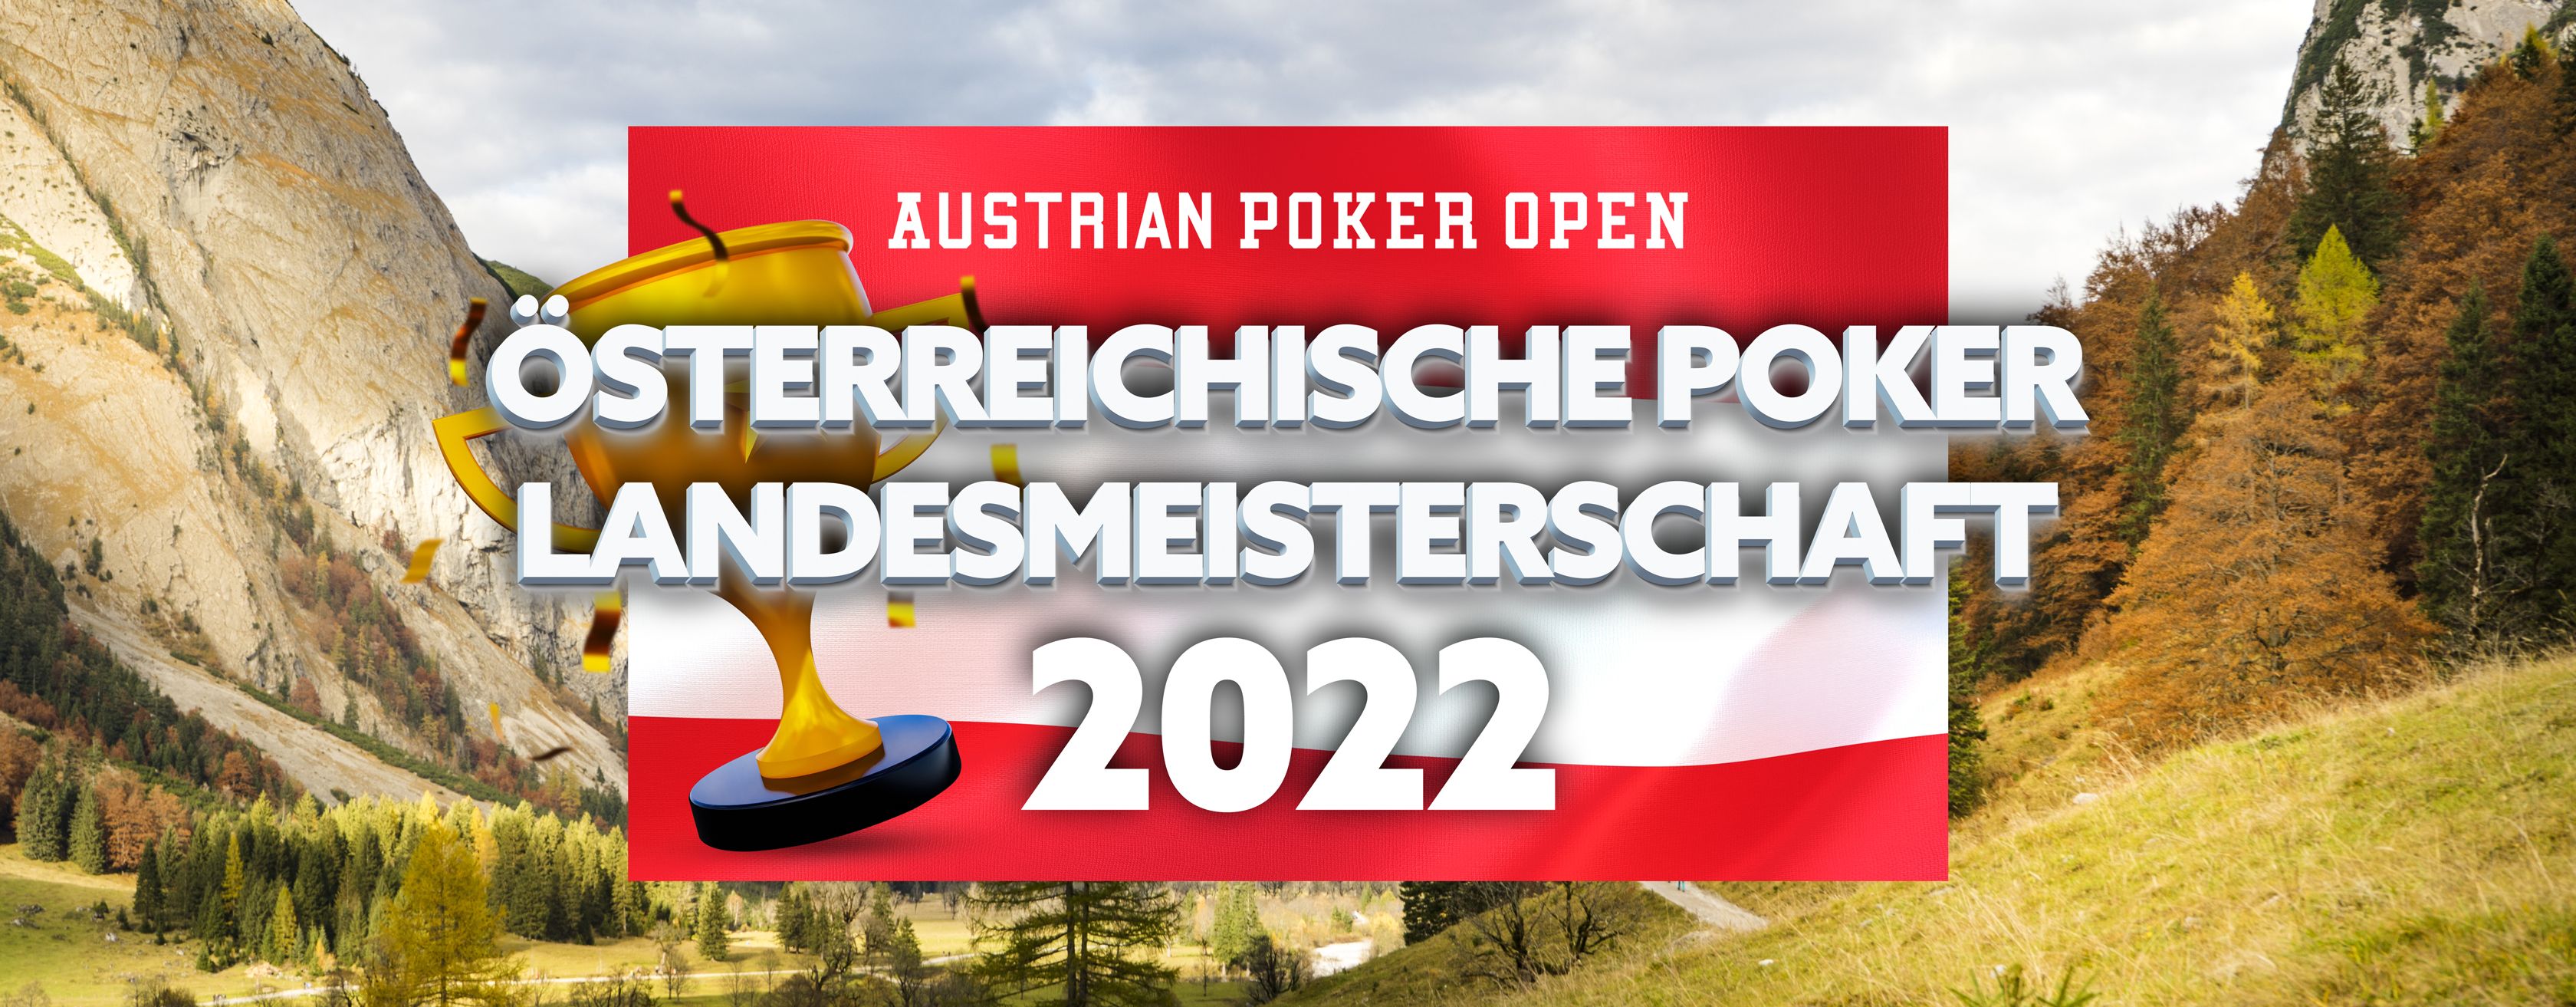 Österreichische Poker Landesmeisterschaft Land Salzburg